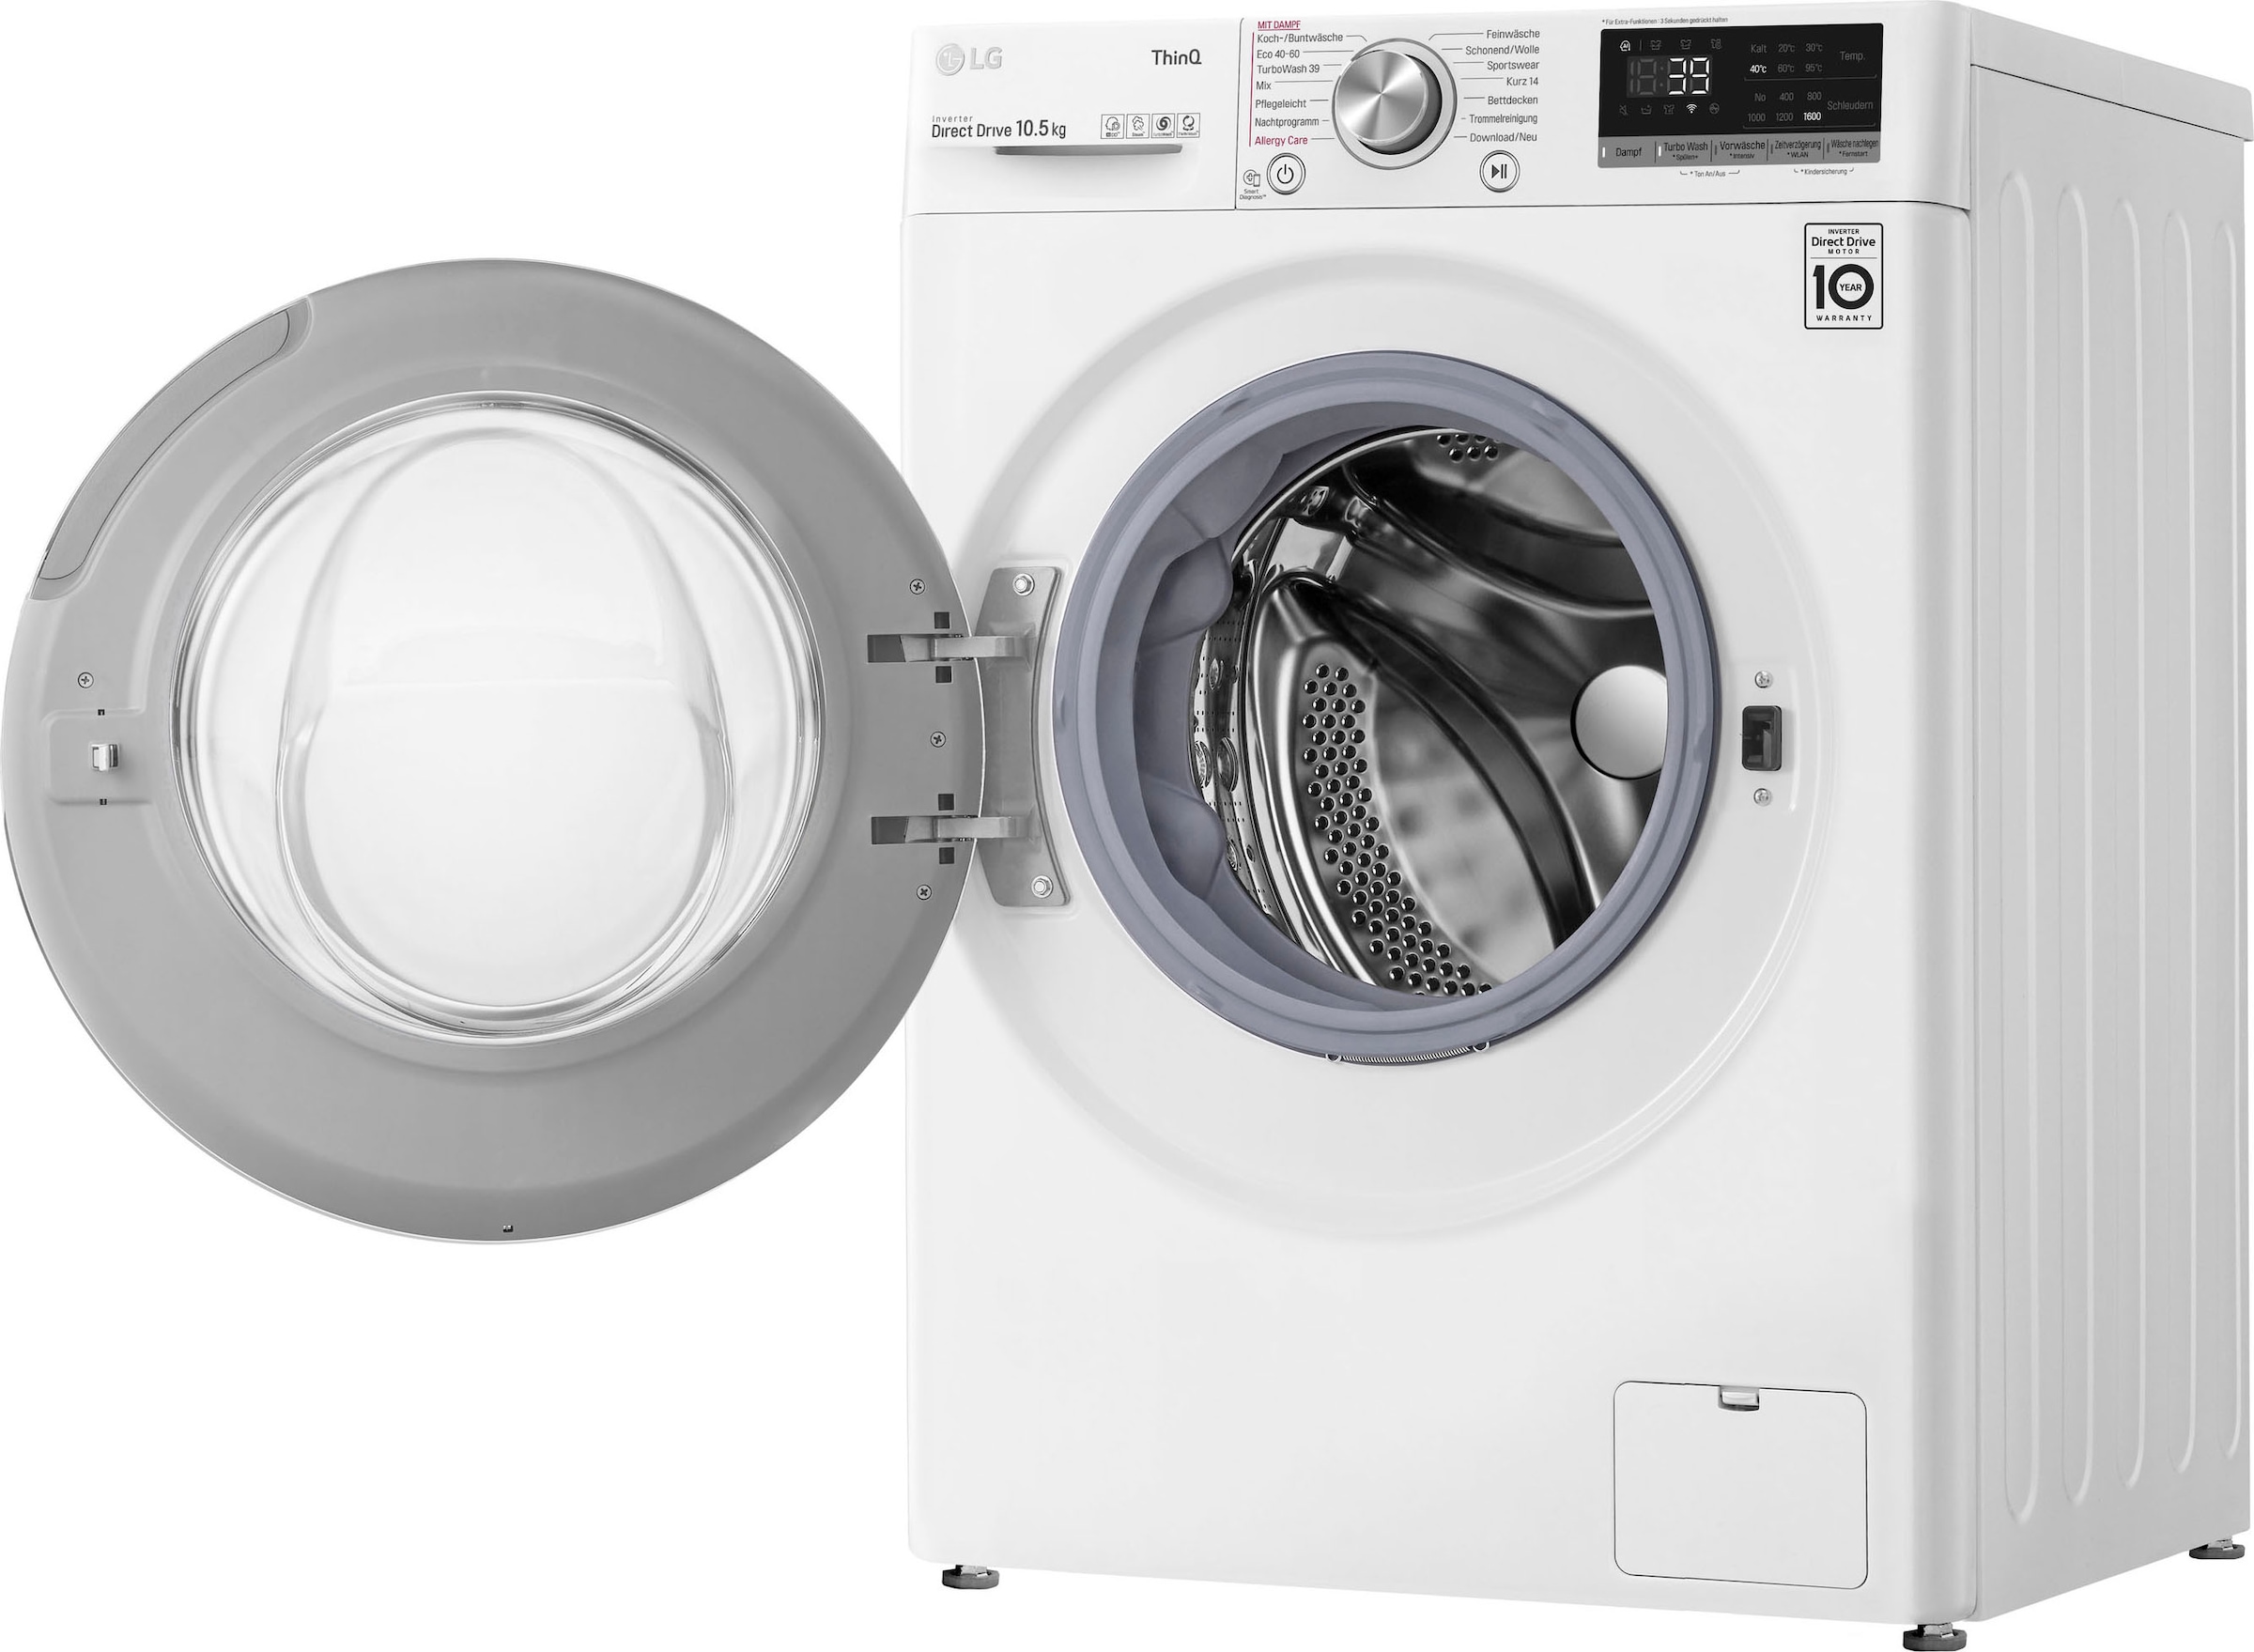 LG Waschmaschine »F4WV5080«, F4WV5080, 1400 kg, kaufen 8 U/min, Steam-Funktion